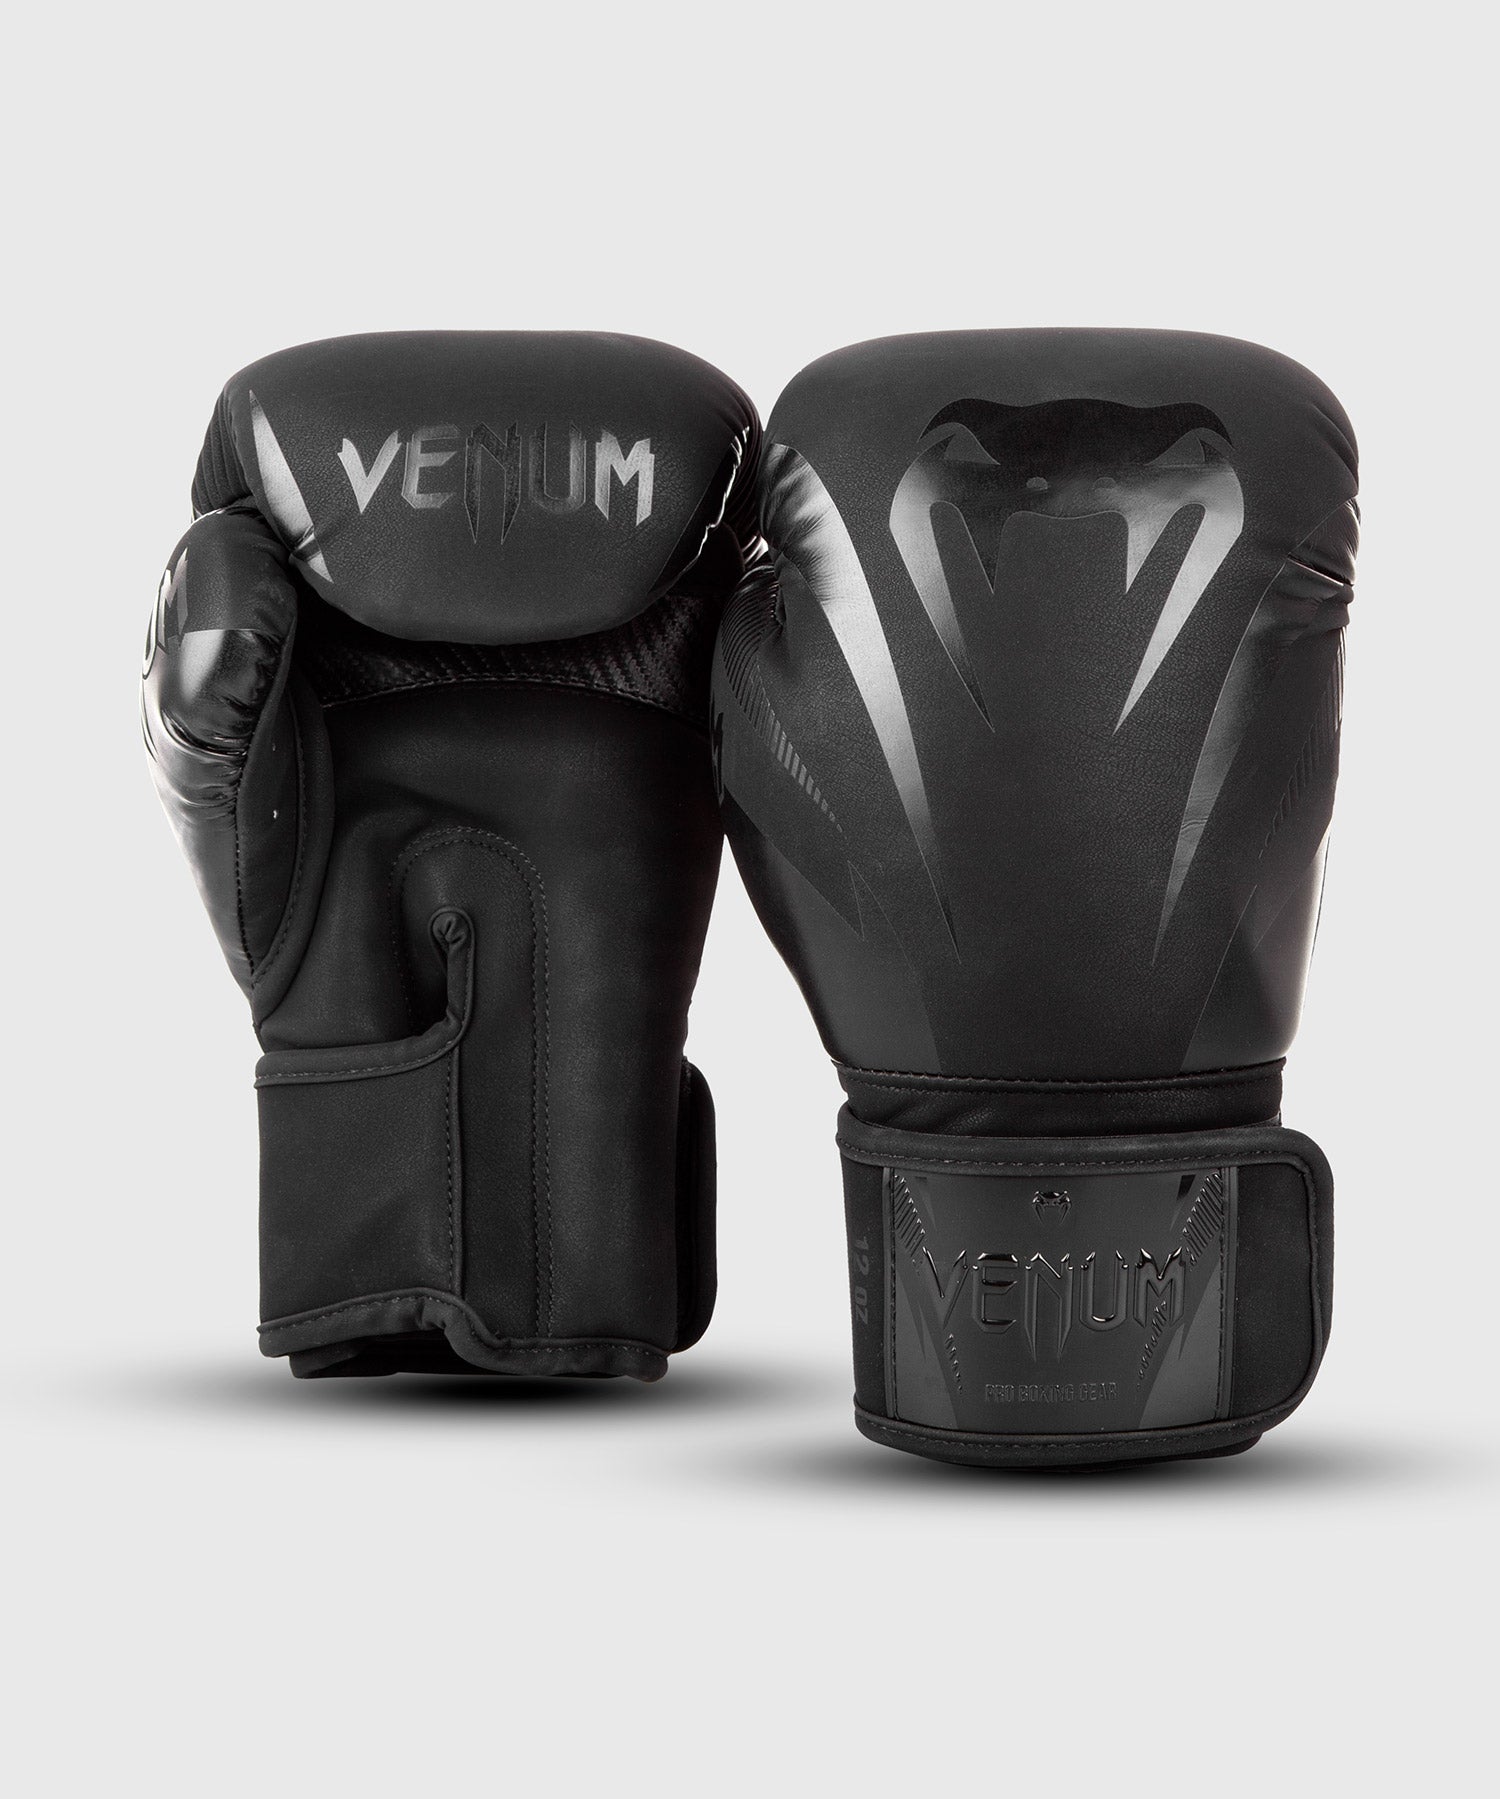 Venum Impact ボクシンググローブ - ブラック/ブラック – Venum 日本